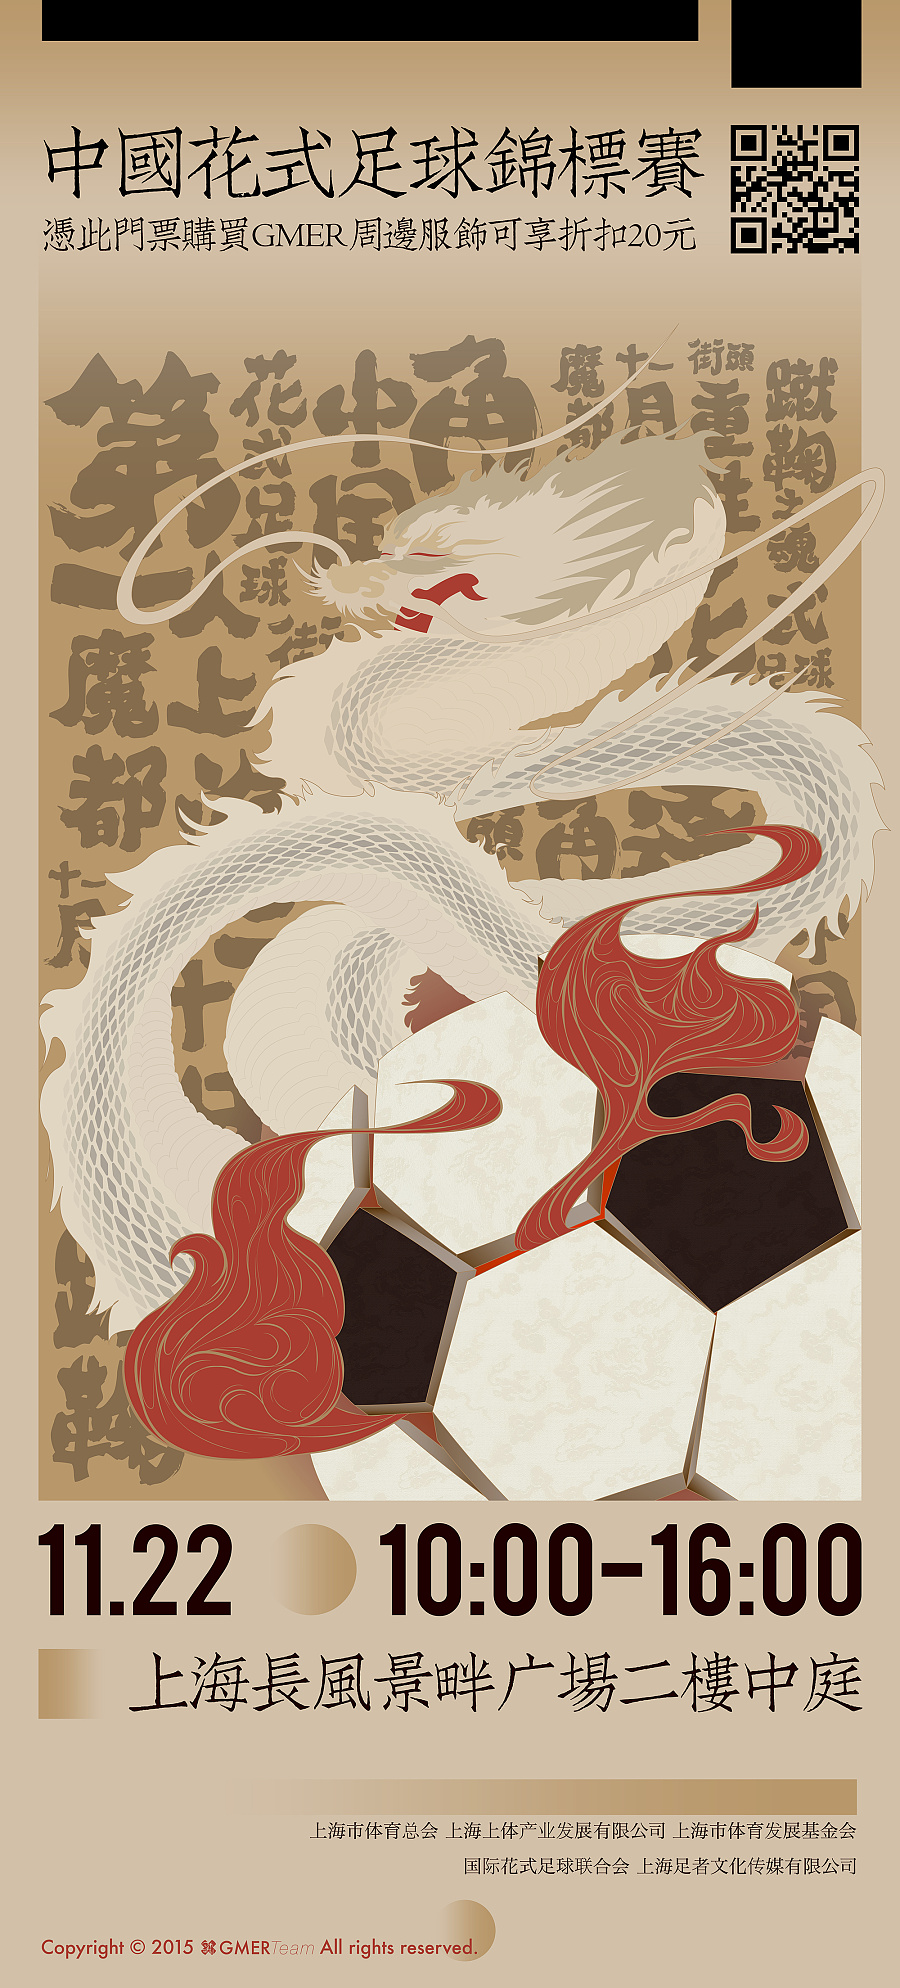 中国花式足球锦标赛 海报&门票设计|海报|平面